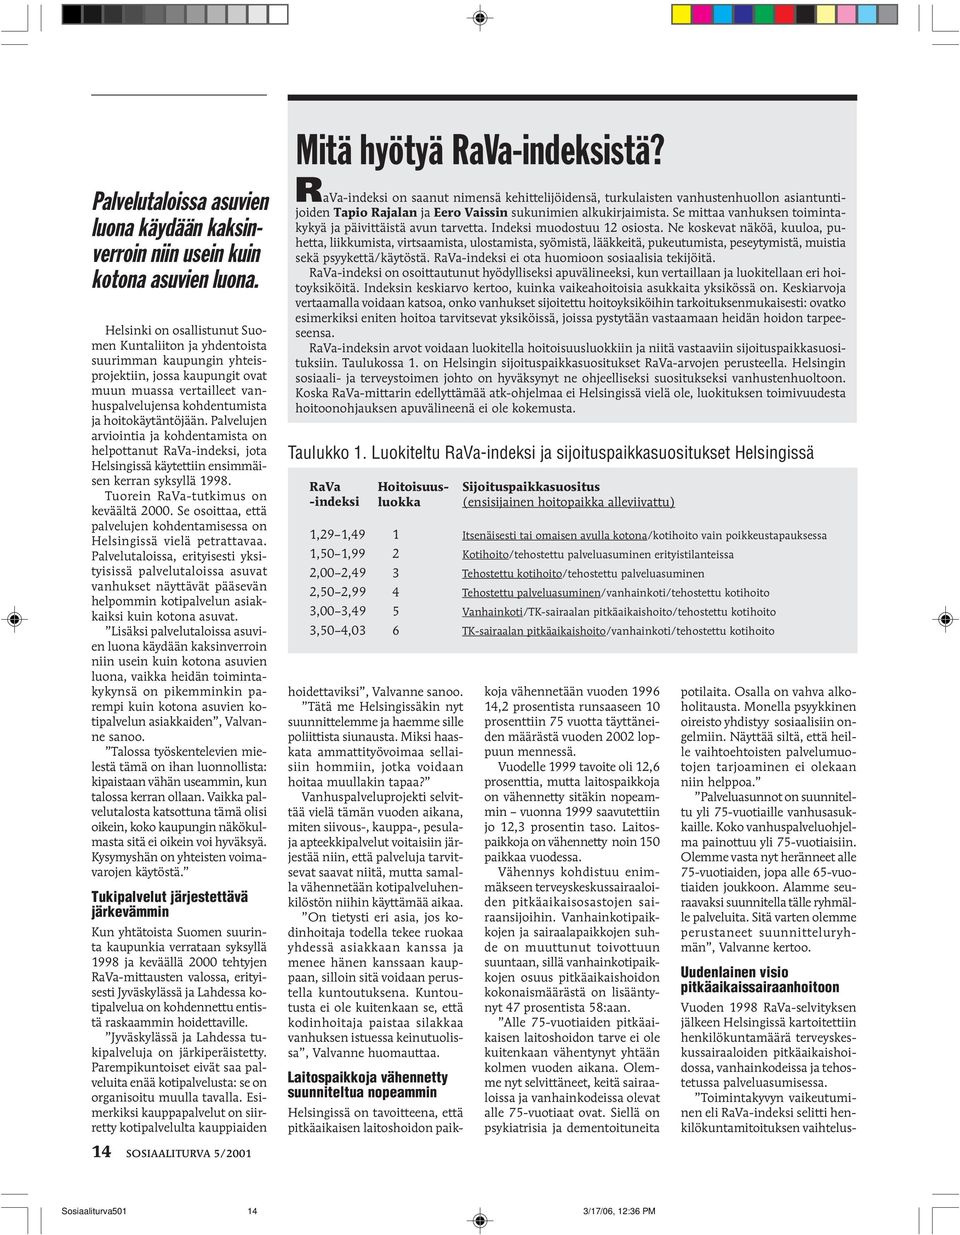 Palvelujen arviointia ja kohdentamista on helpottanut RaVa-indeksi, jota Helsingissä käytettiin ensimmäisen kerran syksyllä 1998. Tuorein RaVa-tutkimus on keväältä 2000.